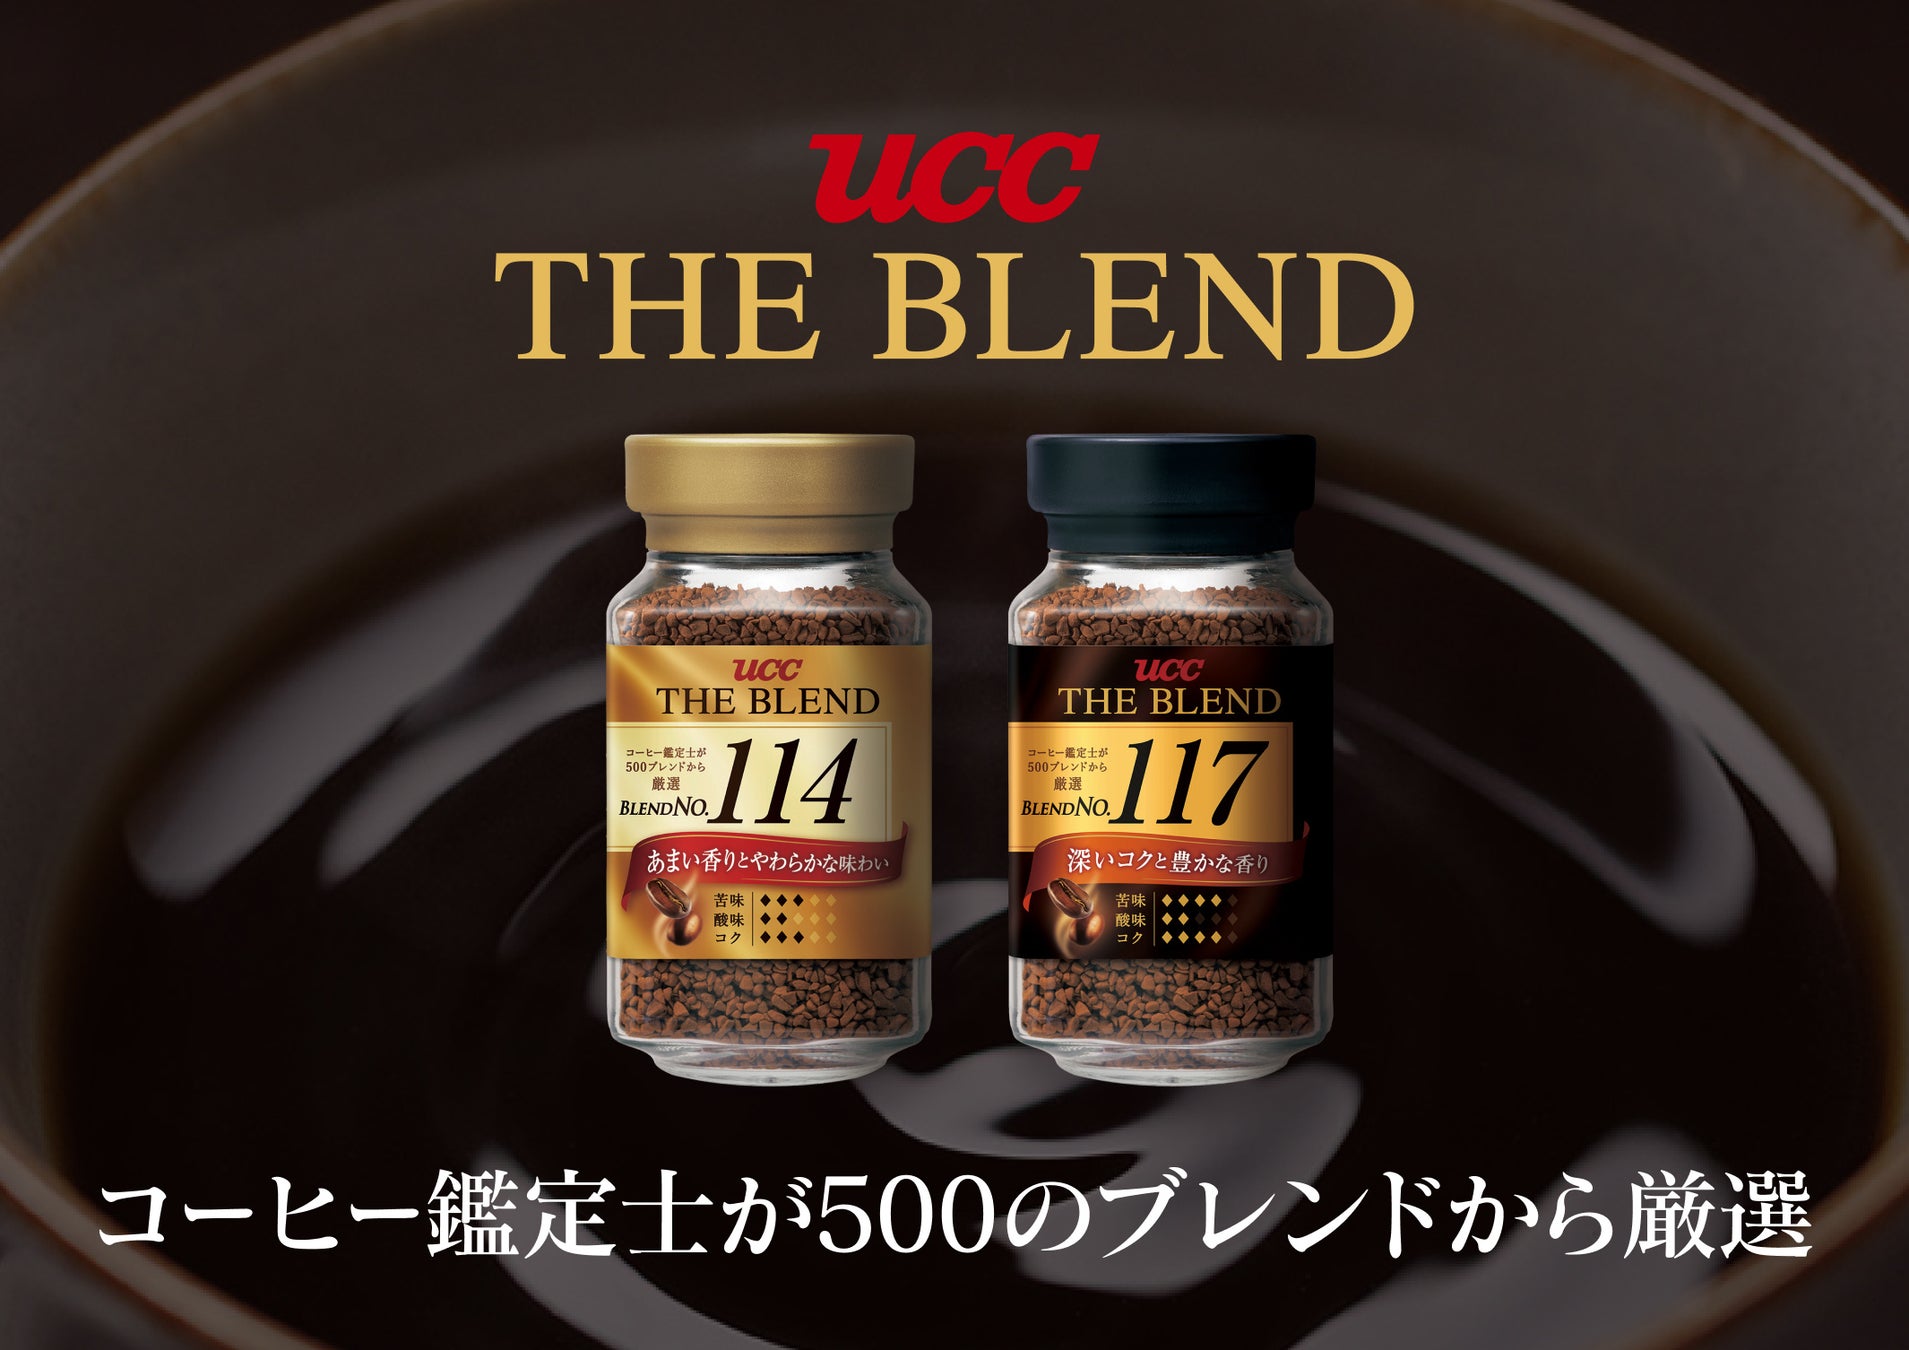 コーヒー鑑定士が500種類のブレンドから選び抜いた2つの味わい。『UCC THE BLEND 114・117』シリーズ全8品を全面リニューアルし、9月1日（木）に発売